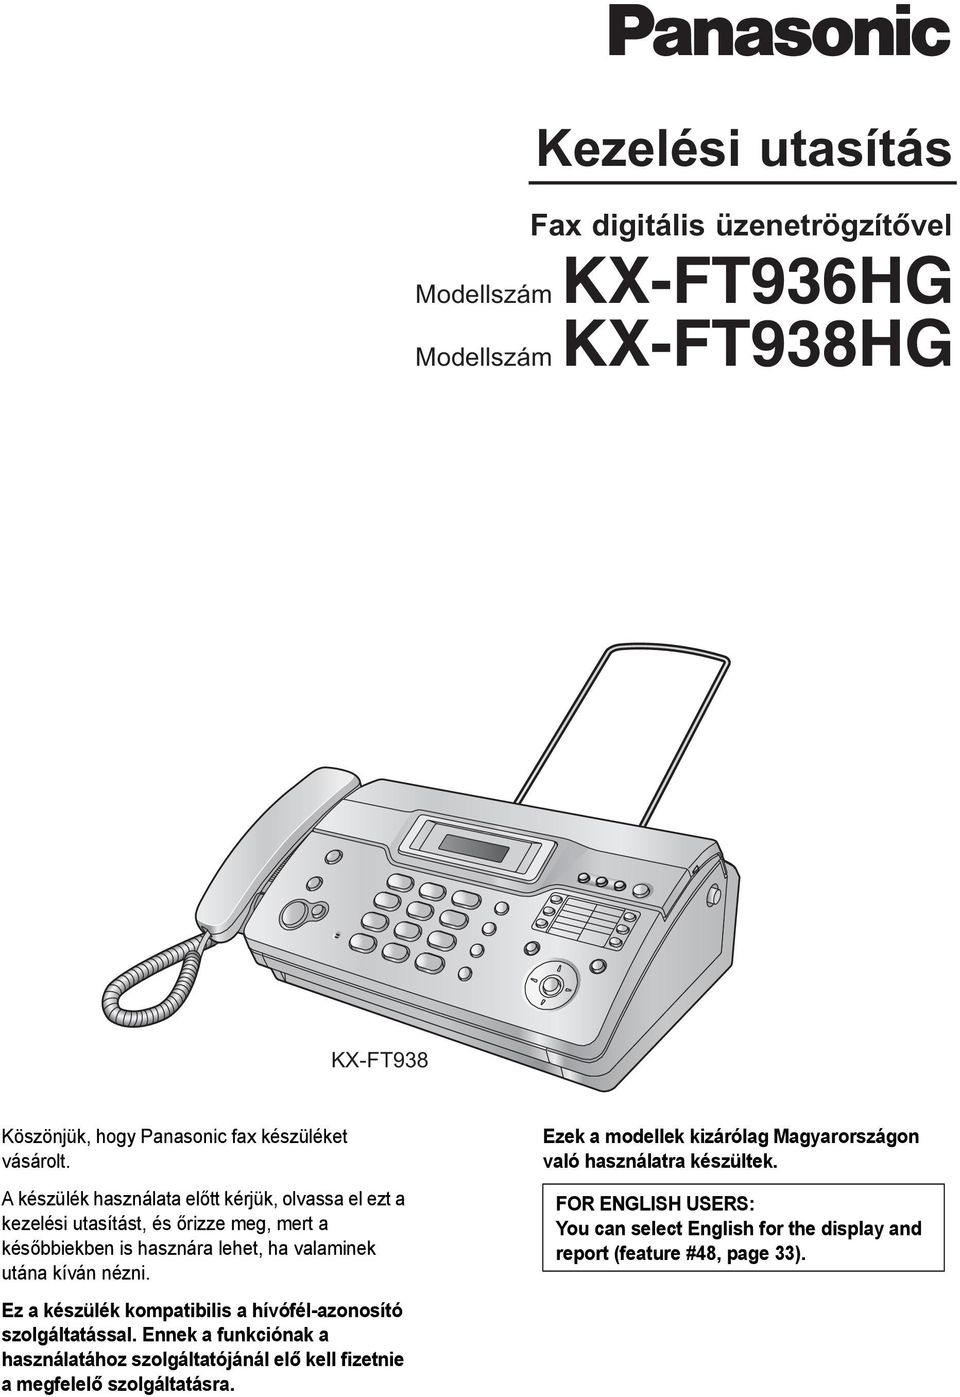 Kezelési utasítás. Fax digitális üzenetrögzítővel. Modellszám KX-FT936HG.  Modellszám KX-FT938HG KX-FT938 - PDF Ingyenes letöltés